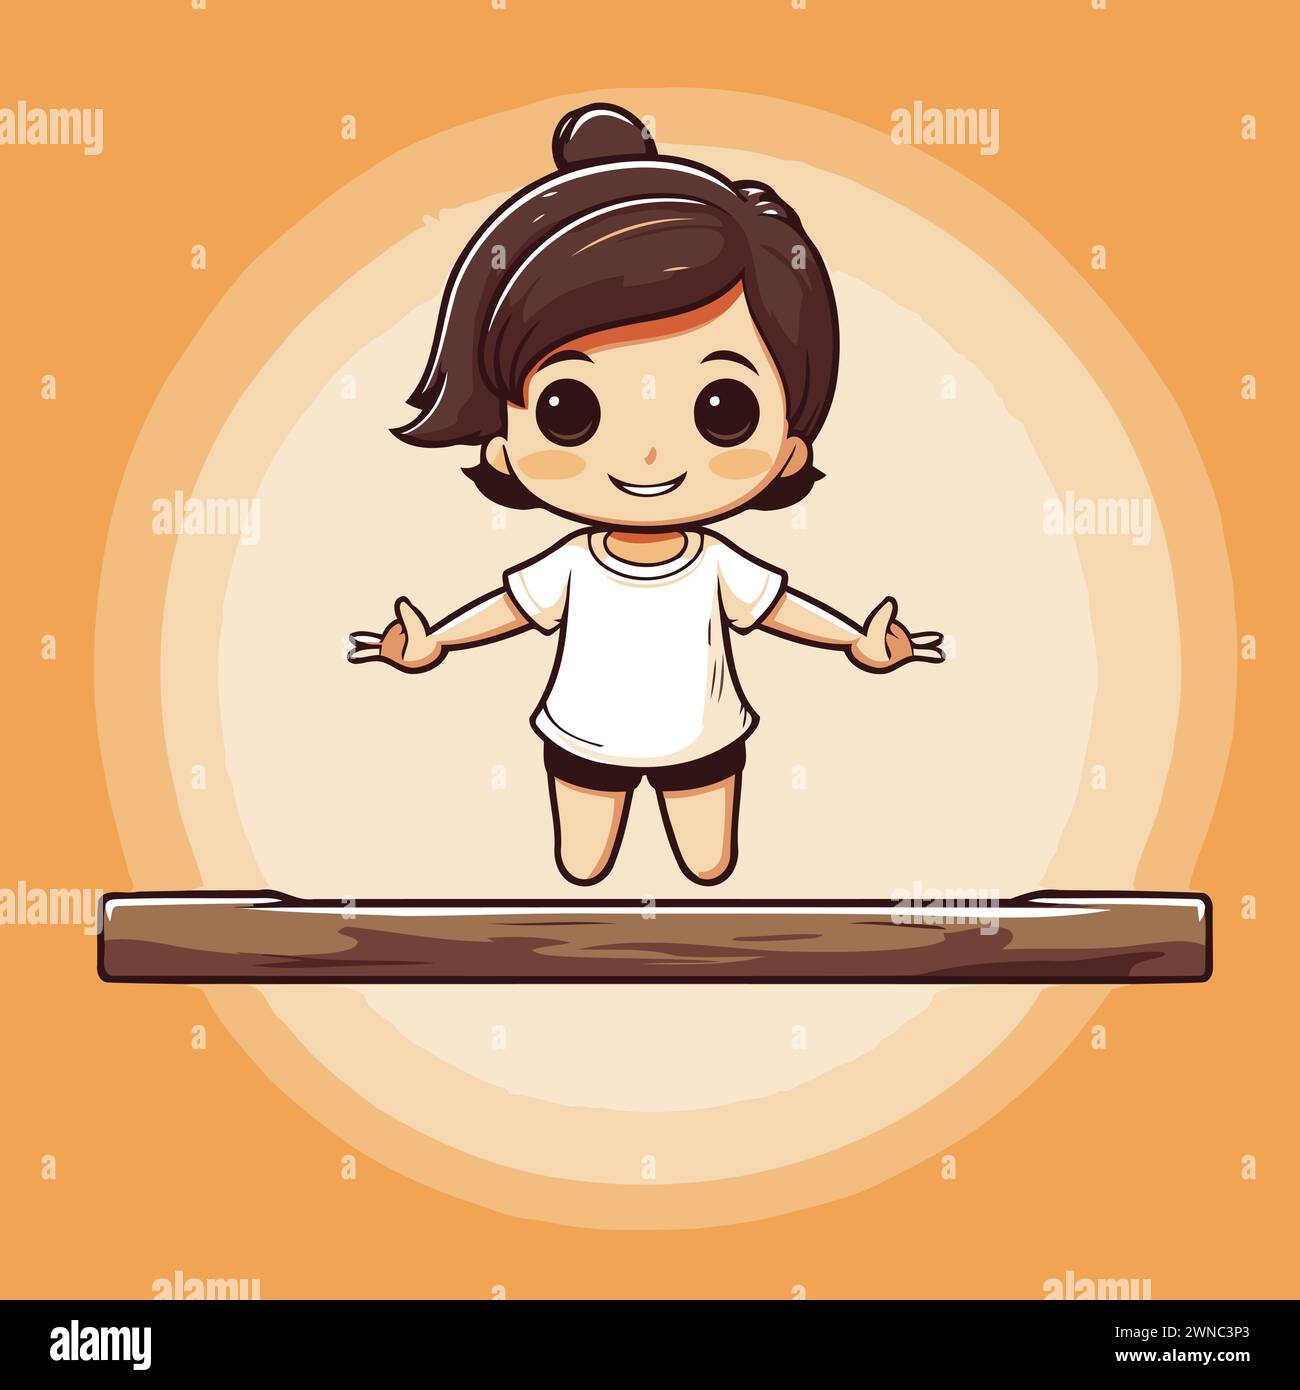 Bambina che salta su una piattaforma di legno. Illustrazione vettoriale cartoni animati isolata su sfondo arancione. Illustrazione Vettoriale